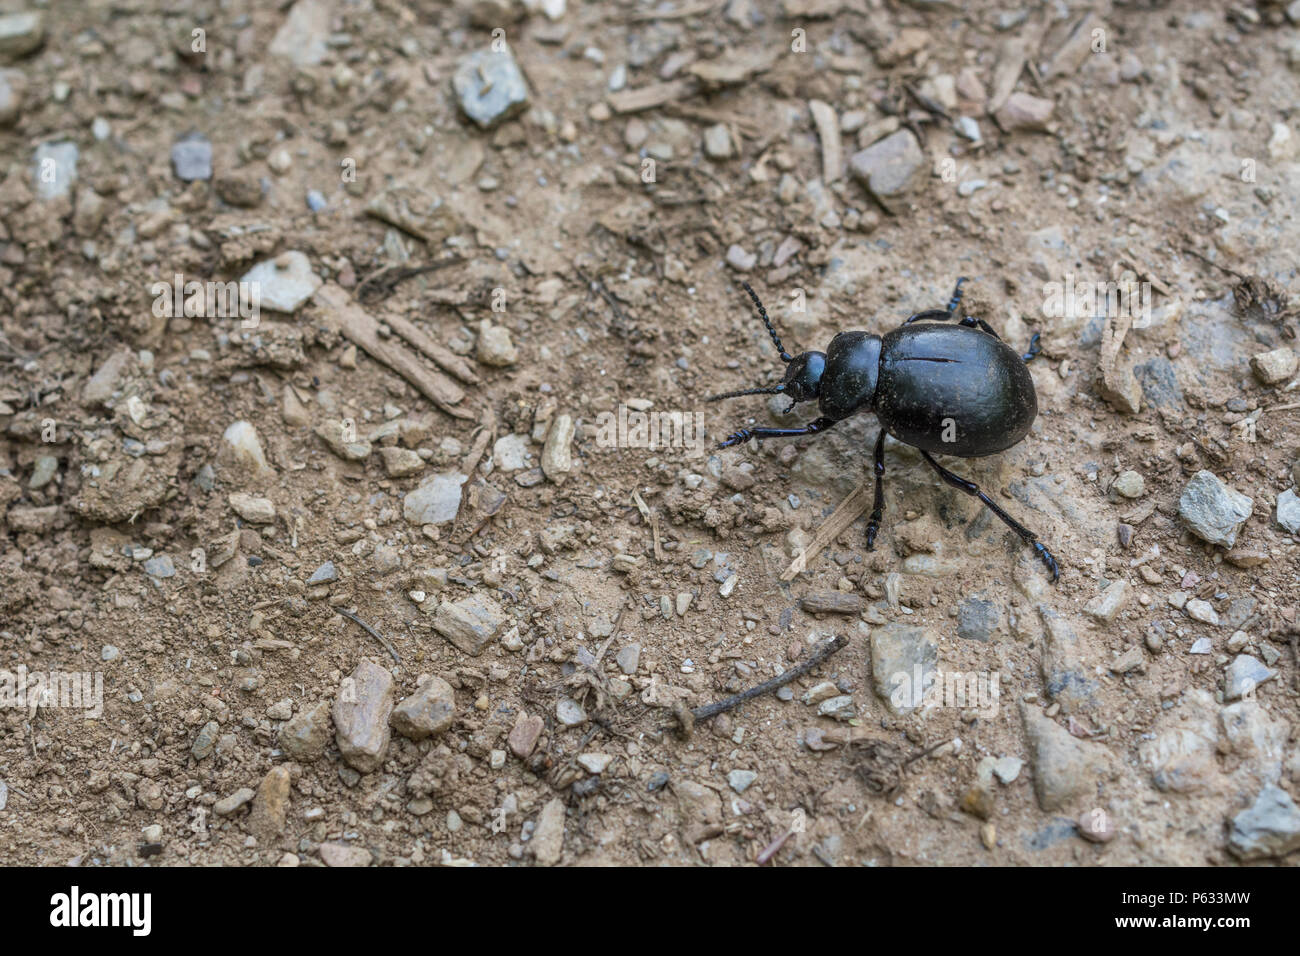 Coleottero nero grande (circa 2 cm di lunghezza) su terreno di paglia. In realtà un Beetle blody-nosed / Timarcha tenebricosa - parte dell'ordine Coleoptera. Insetti UK. Foto Stock